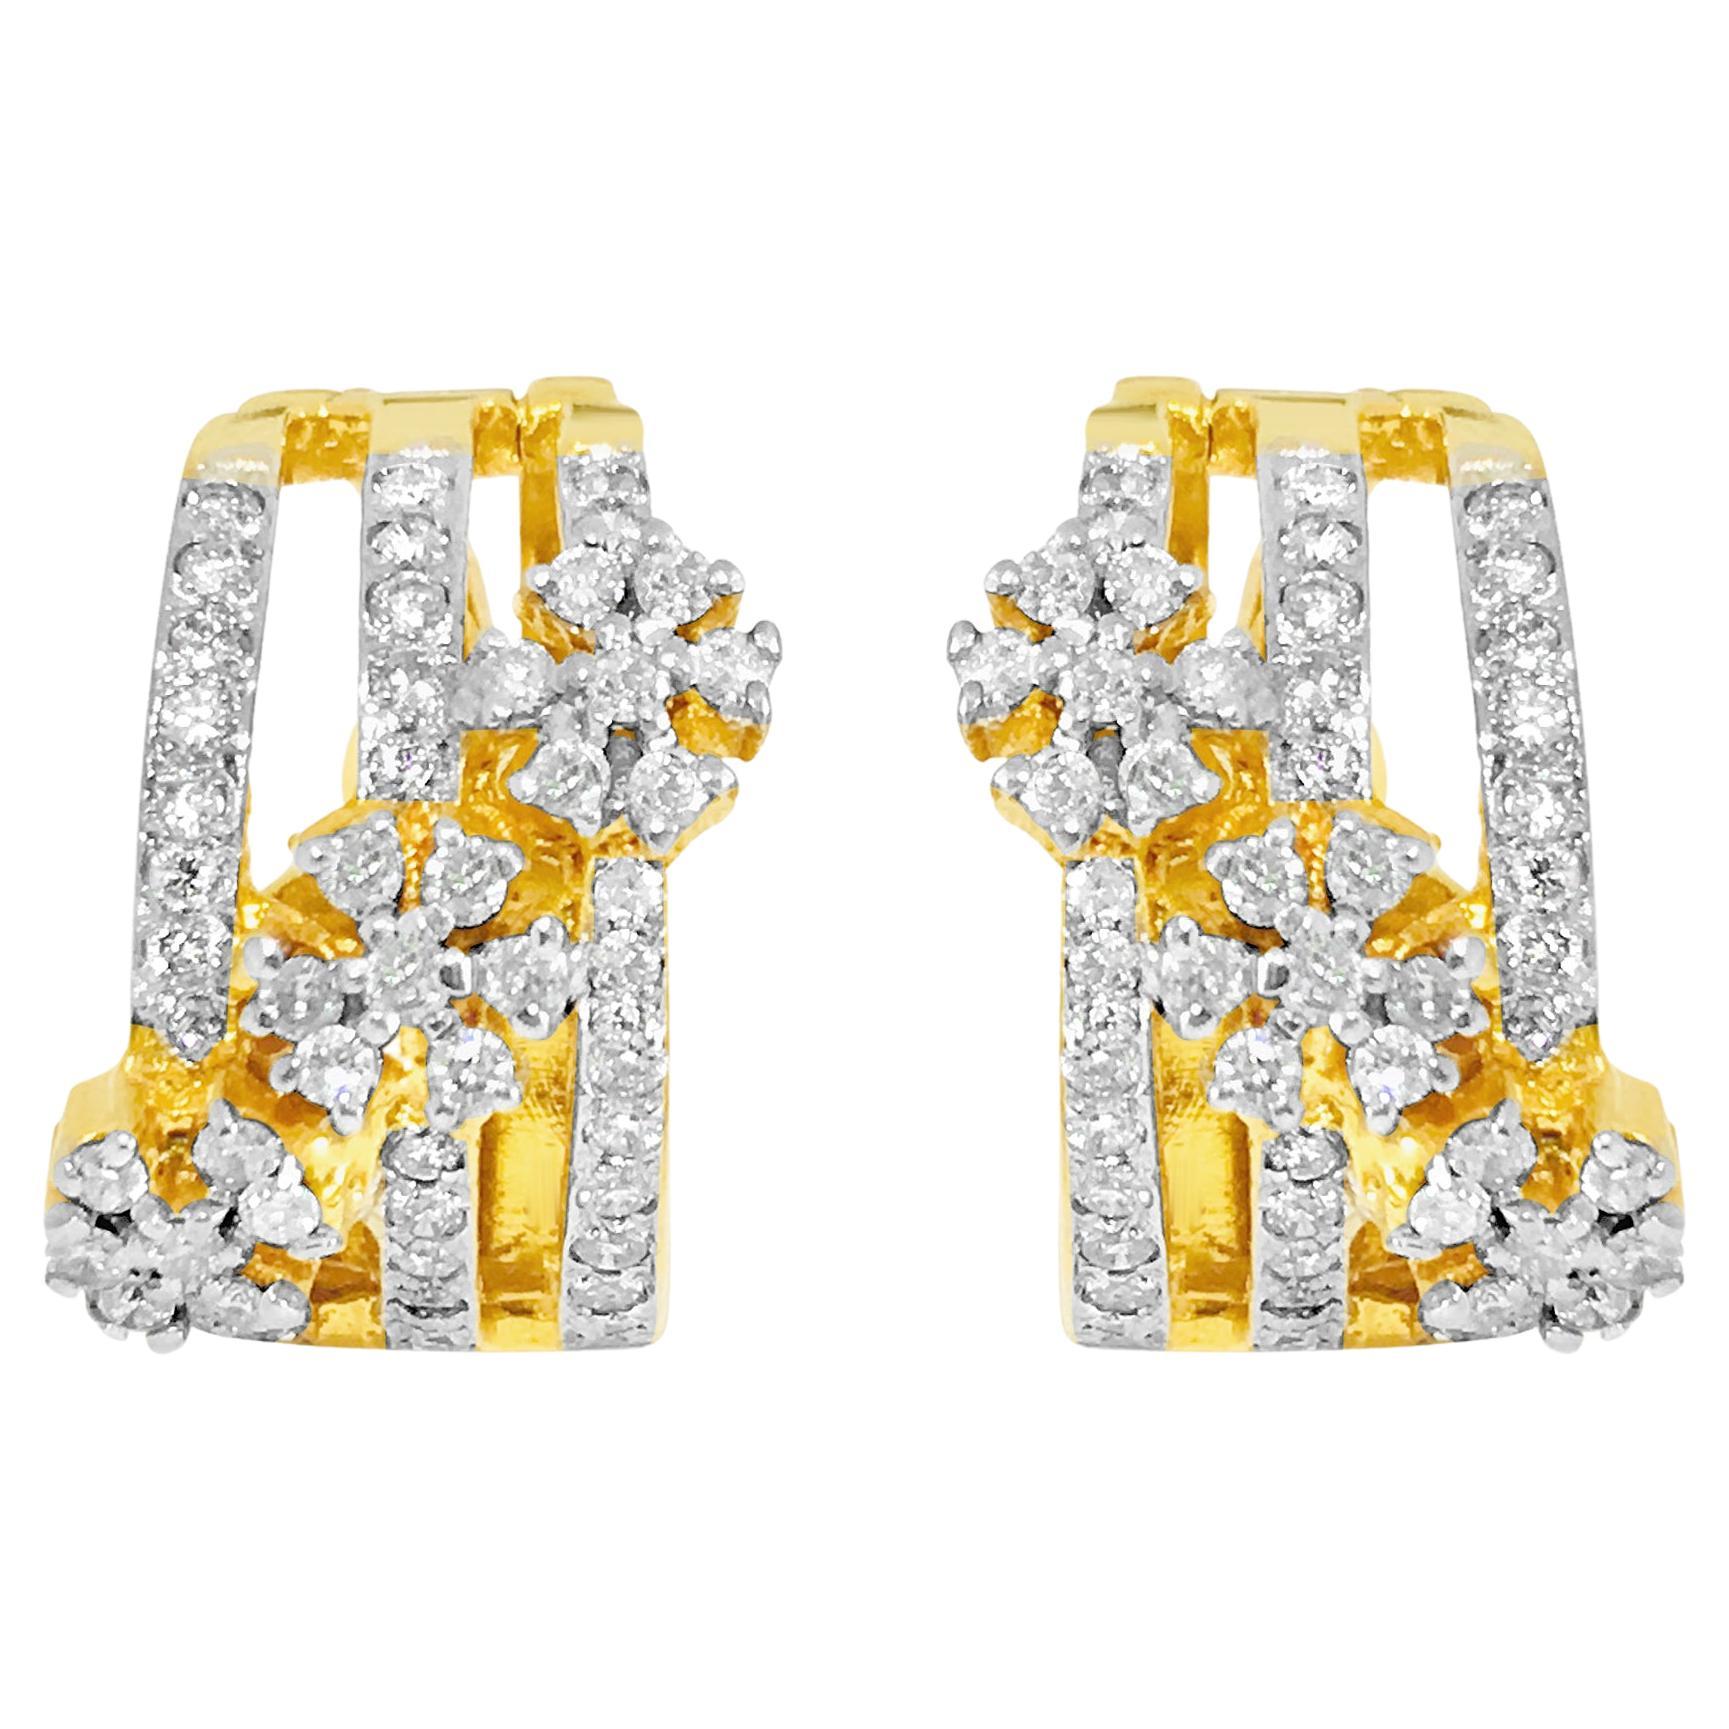 1.35 Carat Diamonds in 14k Yellow Gold Earrings. For Sale